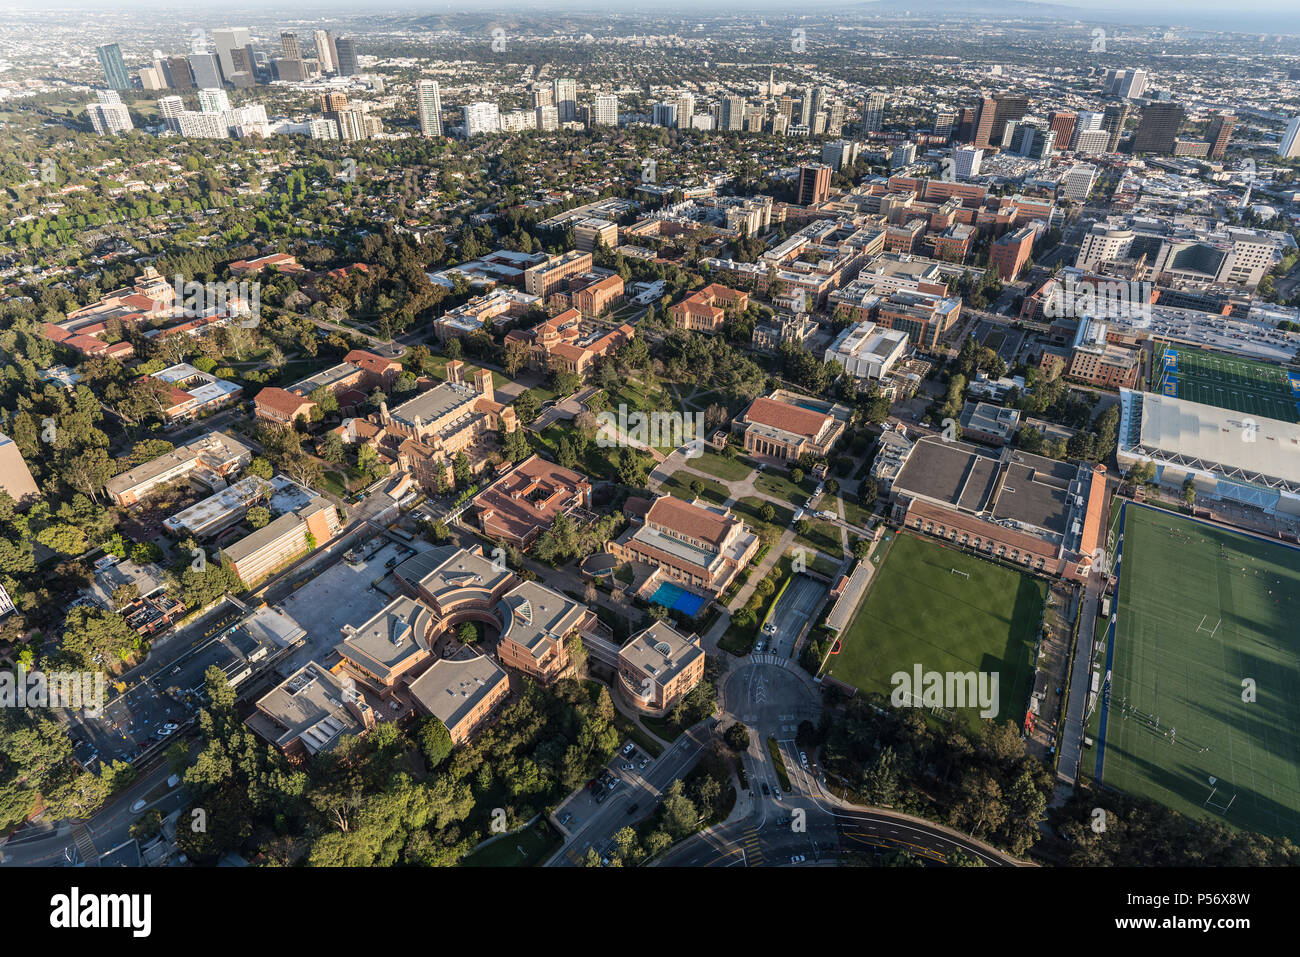 Los Angeles, Kalifornien, USA - 18. April 2018: Antenne Übersicht von UCLA Campus mit Century City und Westwood im Hintergrund. Stockfoto